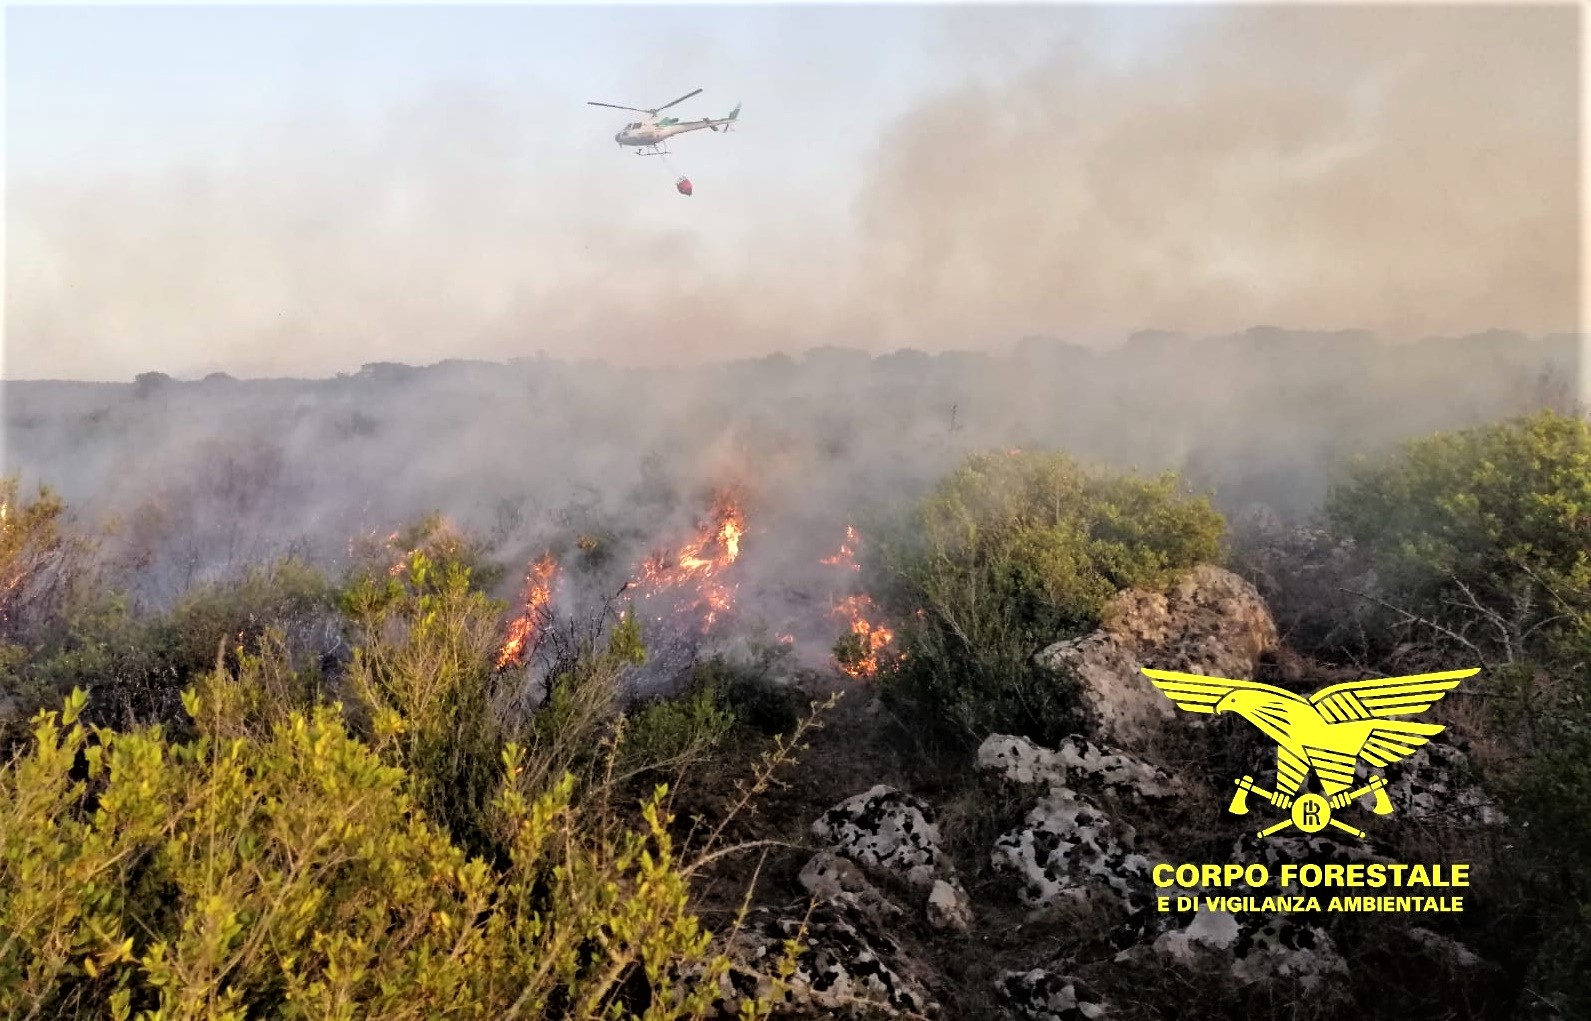 Sardegna: incendio in corso a Burgos, in azione un elicottero